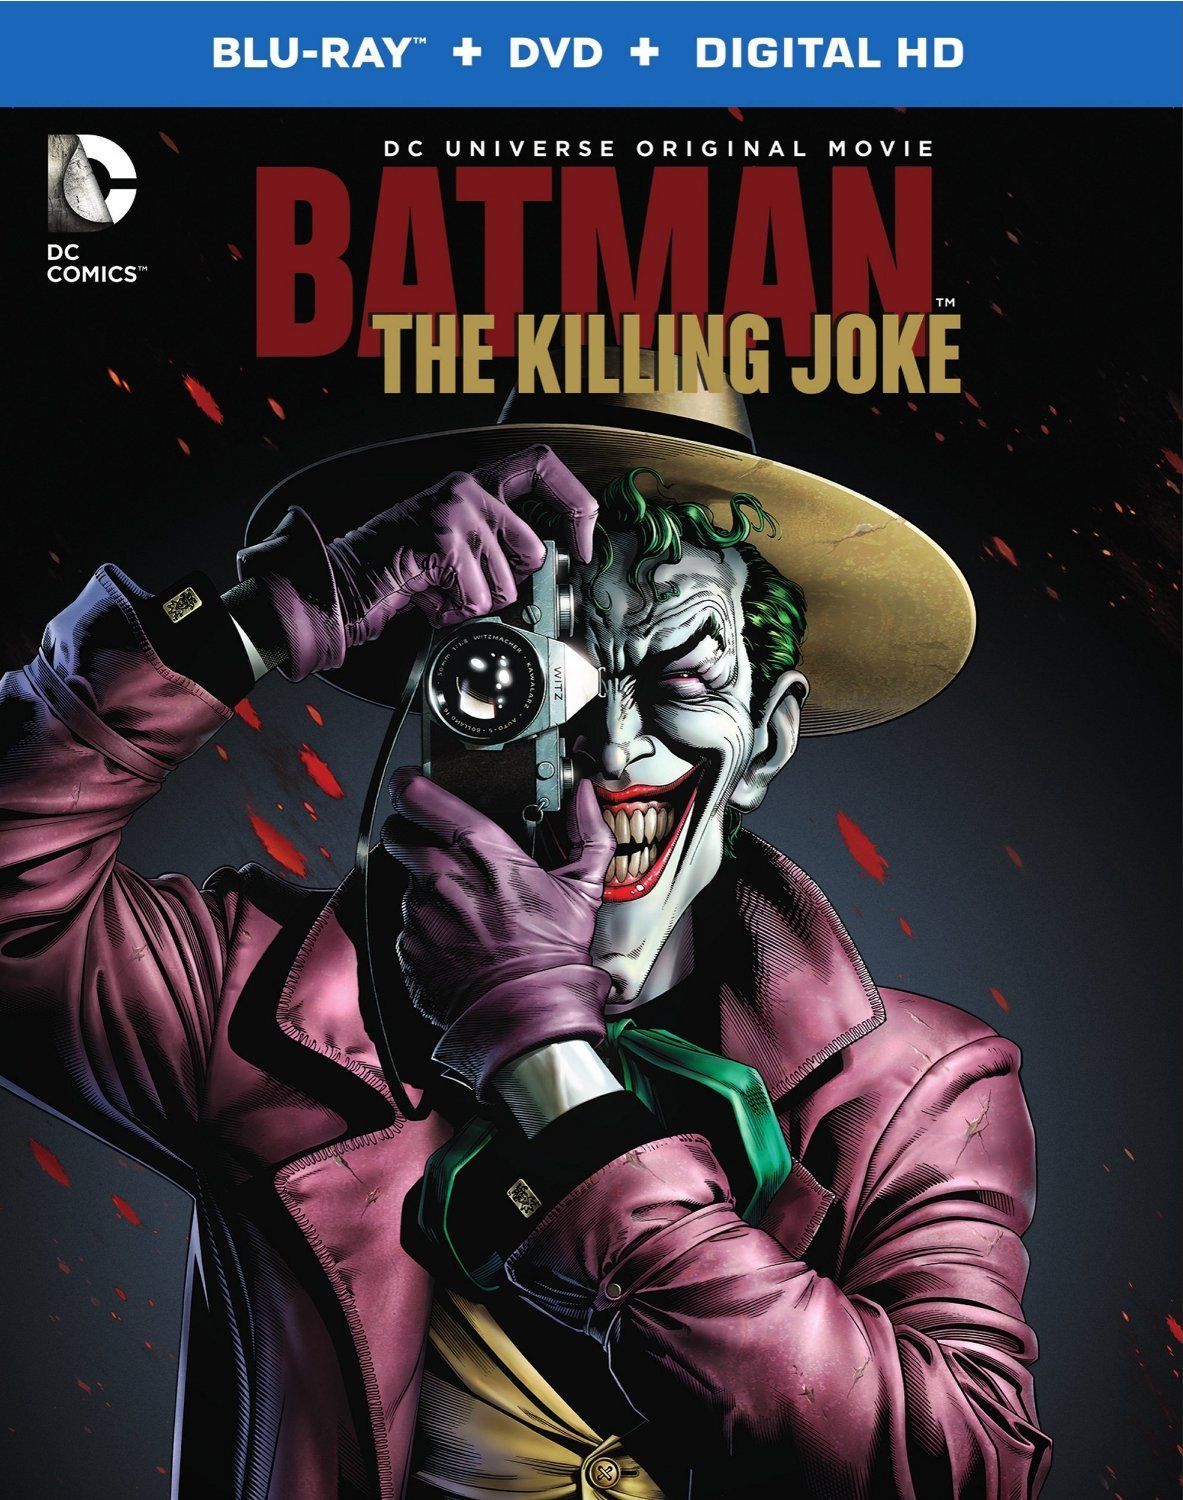 Batman: The Killing Joke Blu-ray Details & Release Date Revealed